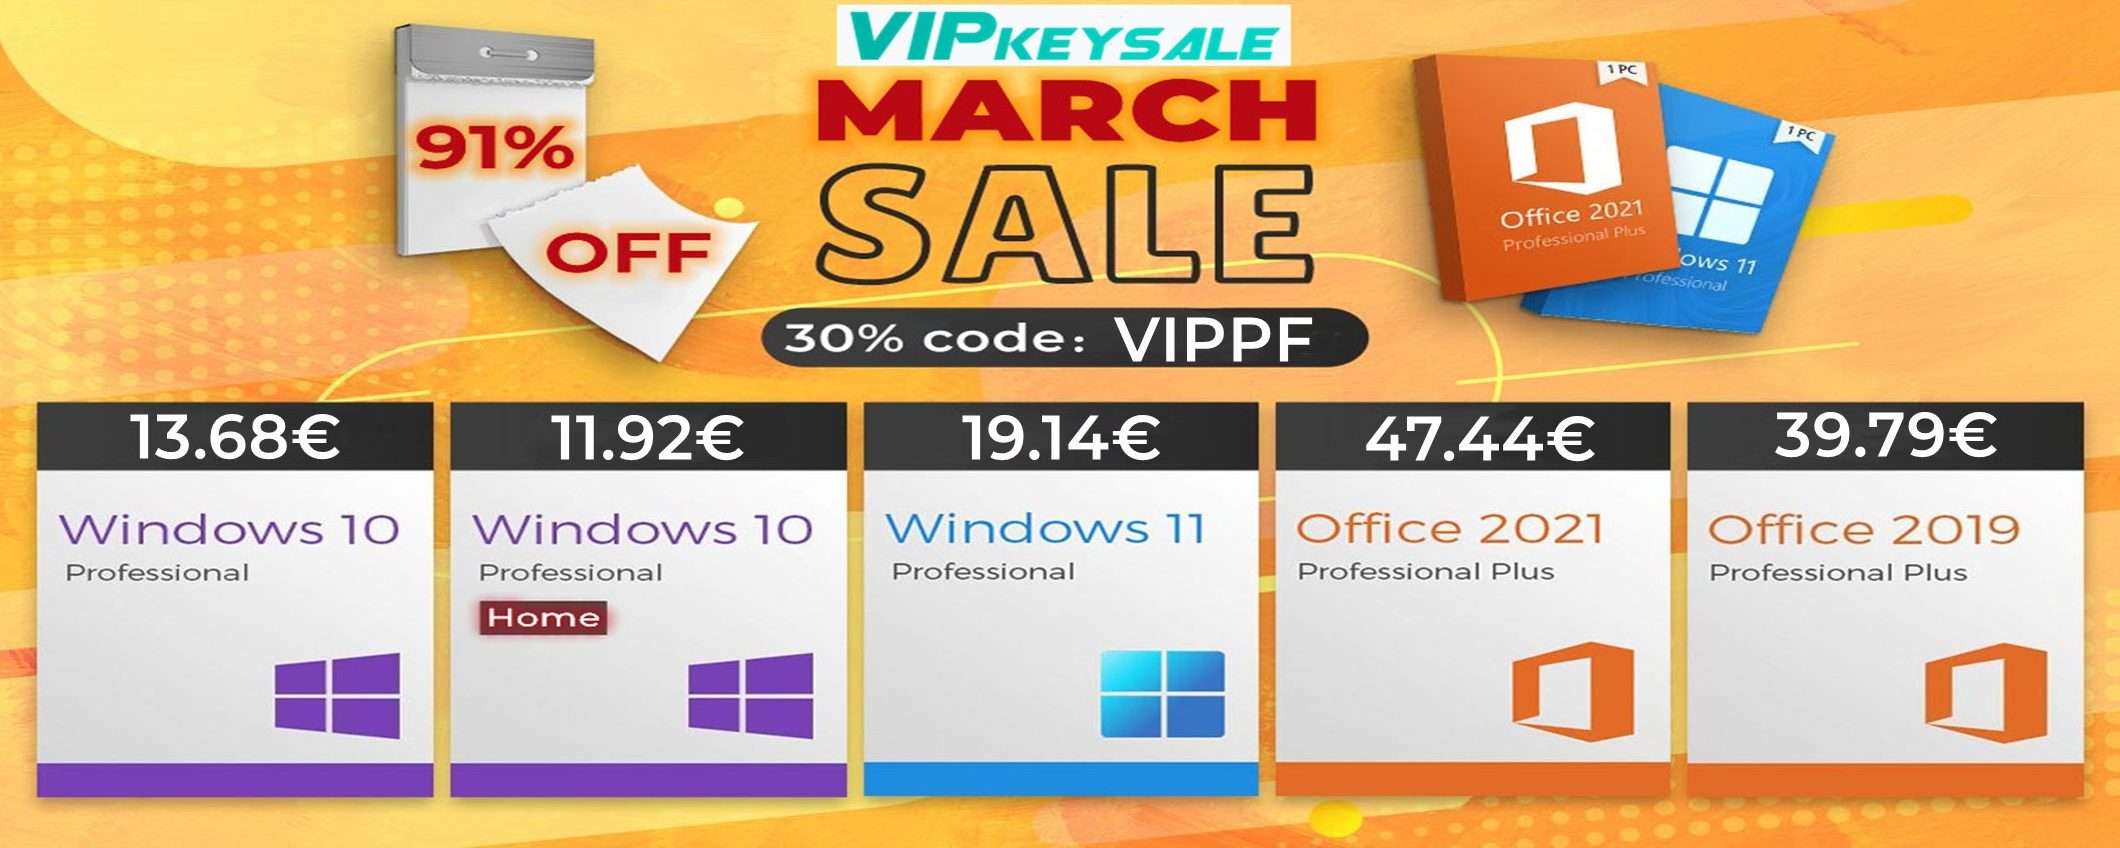 Licenze originali a vita per Windows 10 a 12€: Marzo porta il 91% di sconto